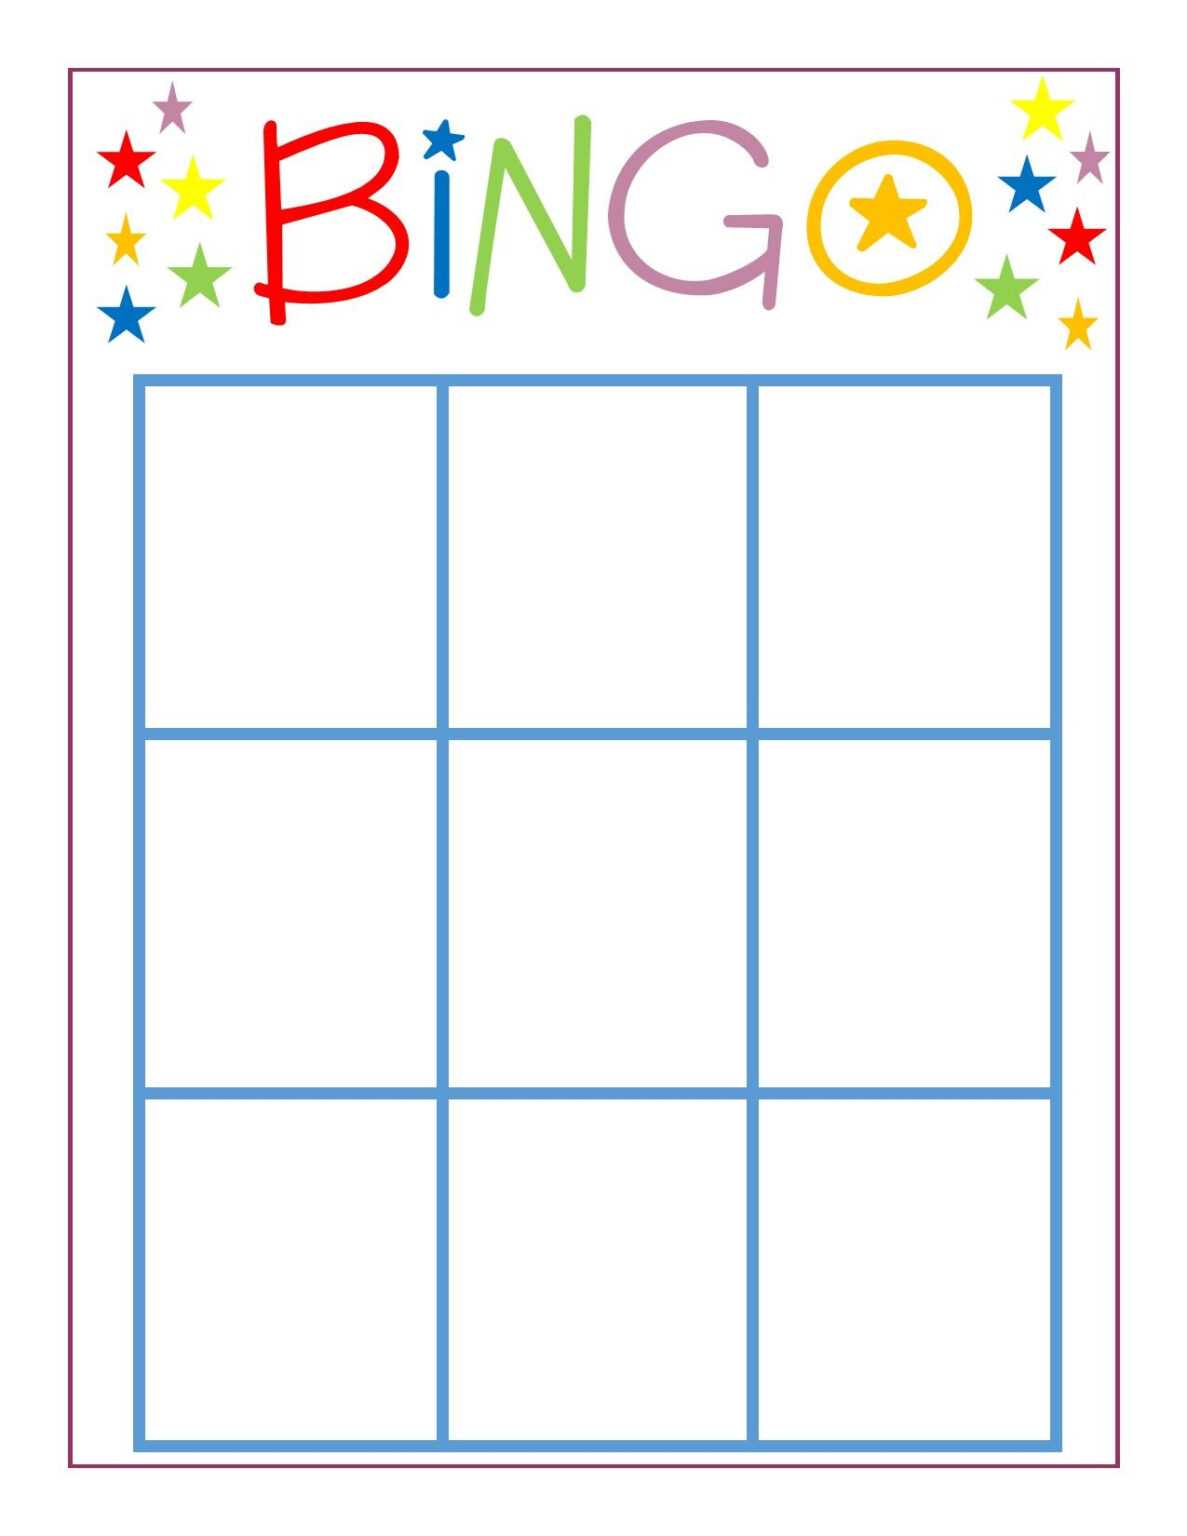 Family Game Night Bingo Bingo Card Template Blank Bingo Inside Bingo Card Template Word 